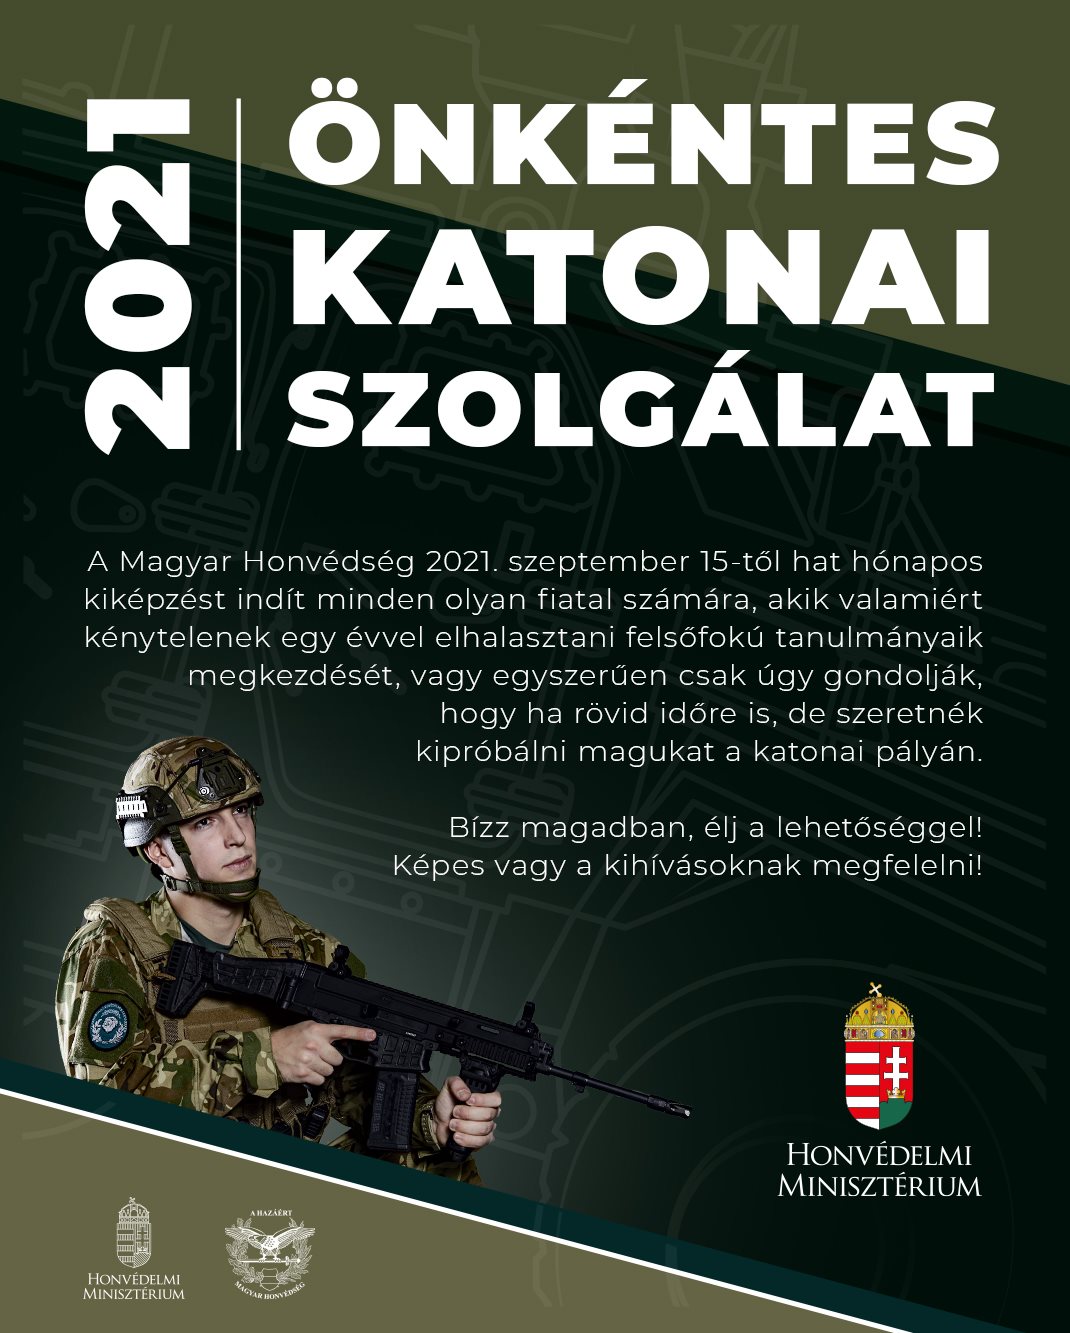 Székesfehérváron is várja az önkénteseket a Magyar Honvédség